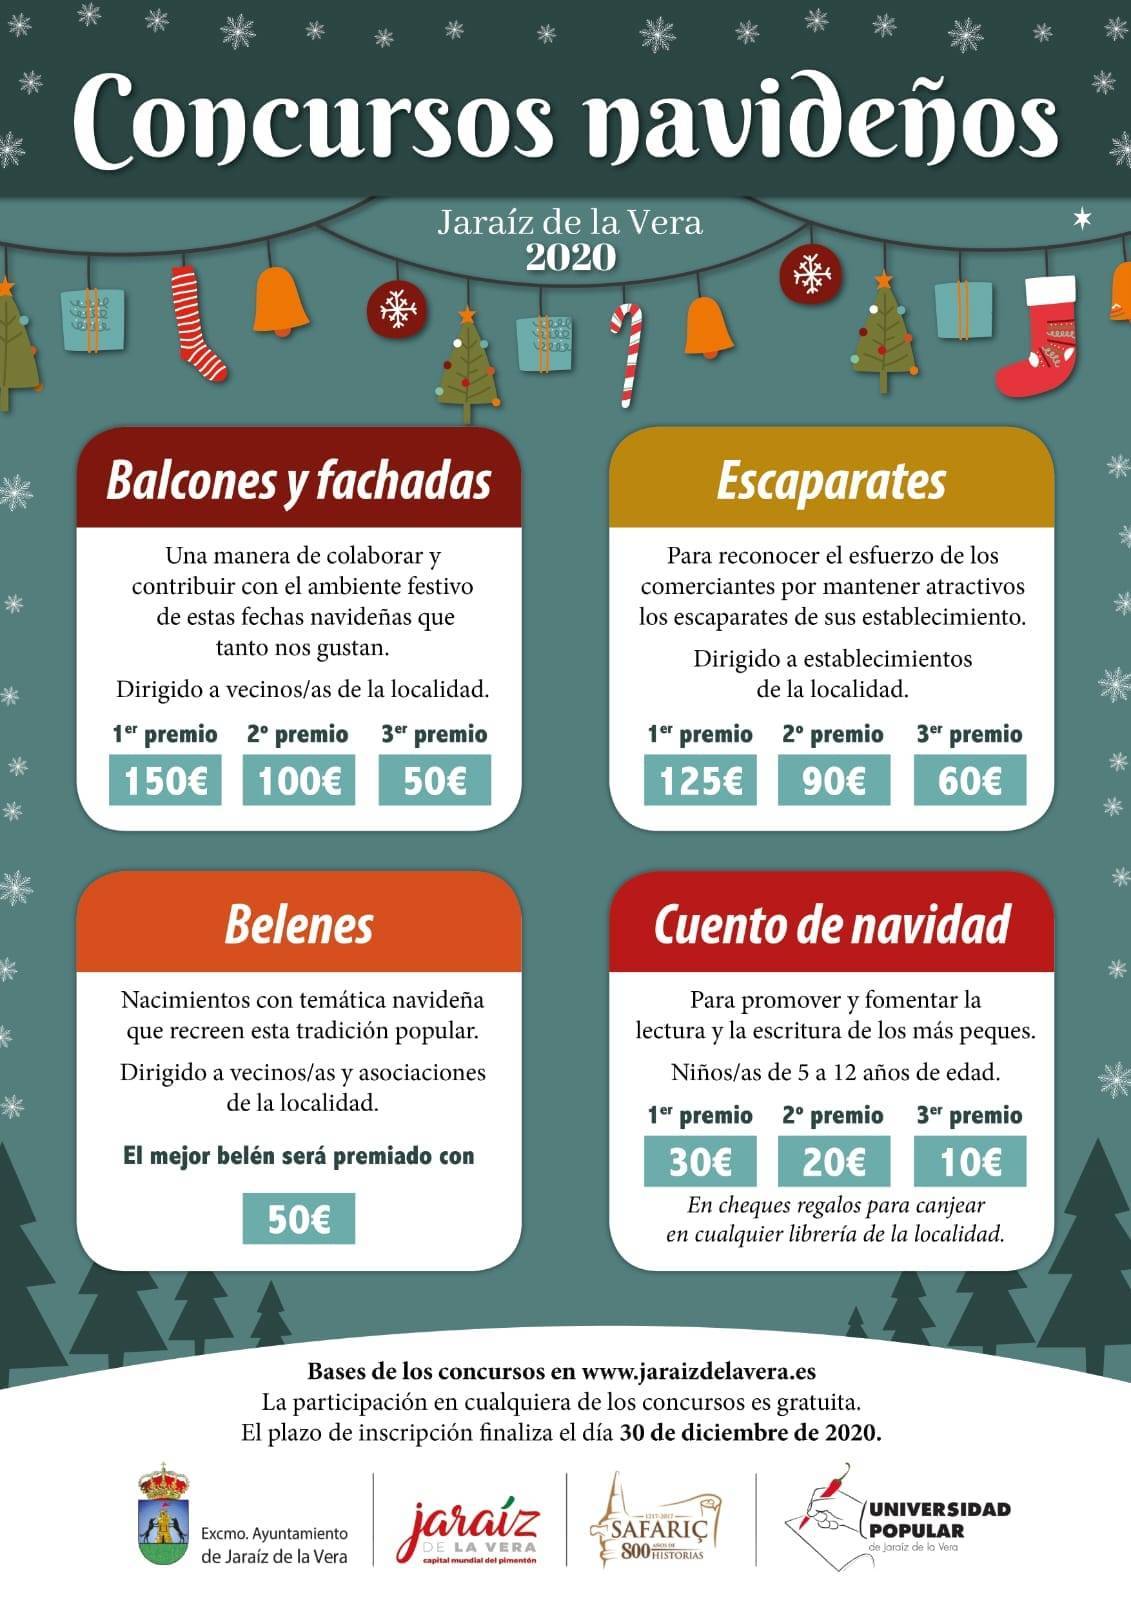 Concursos navideños (2020) - Jaraíz de la Vera (Cáceres)